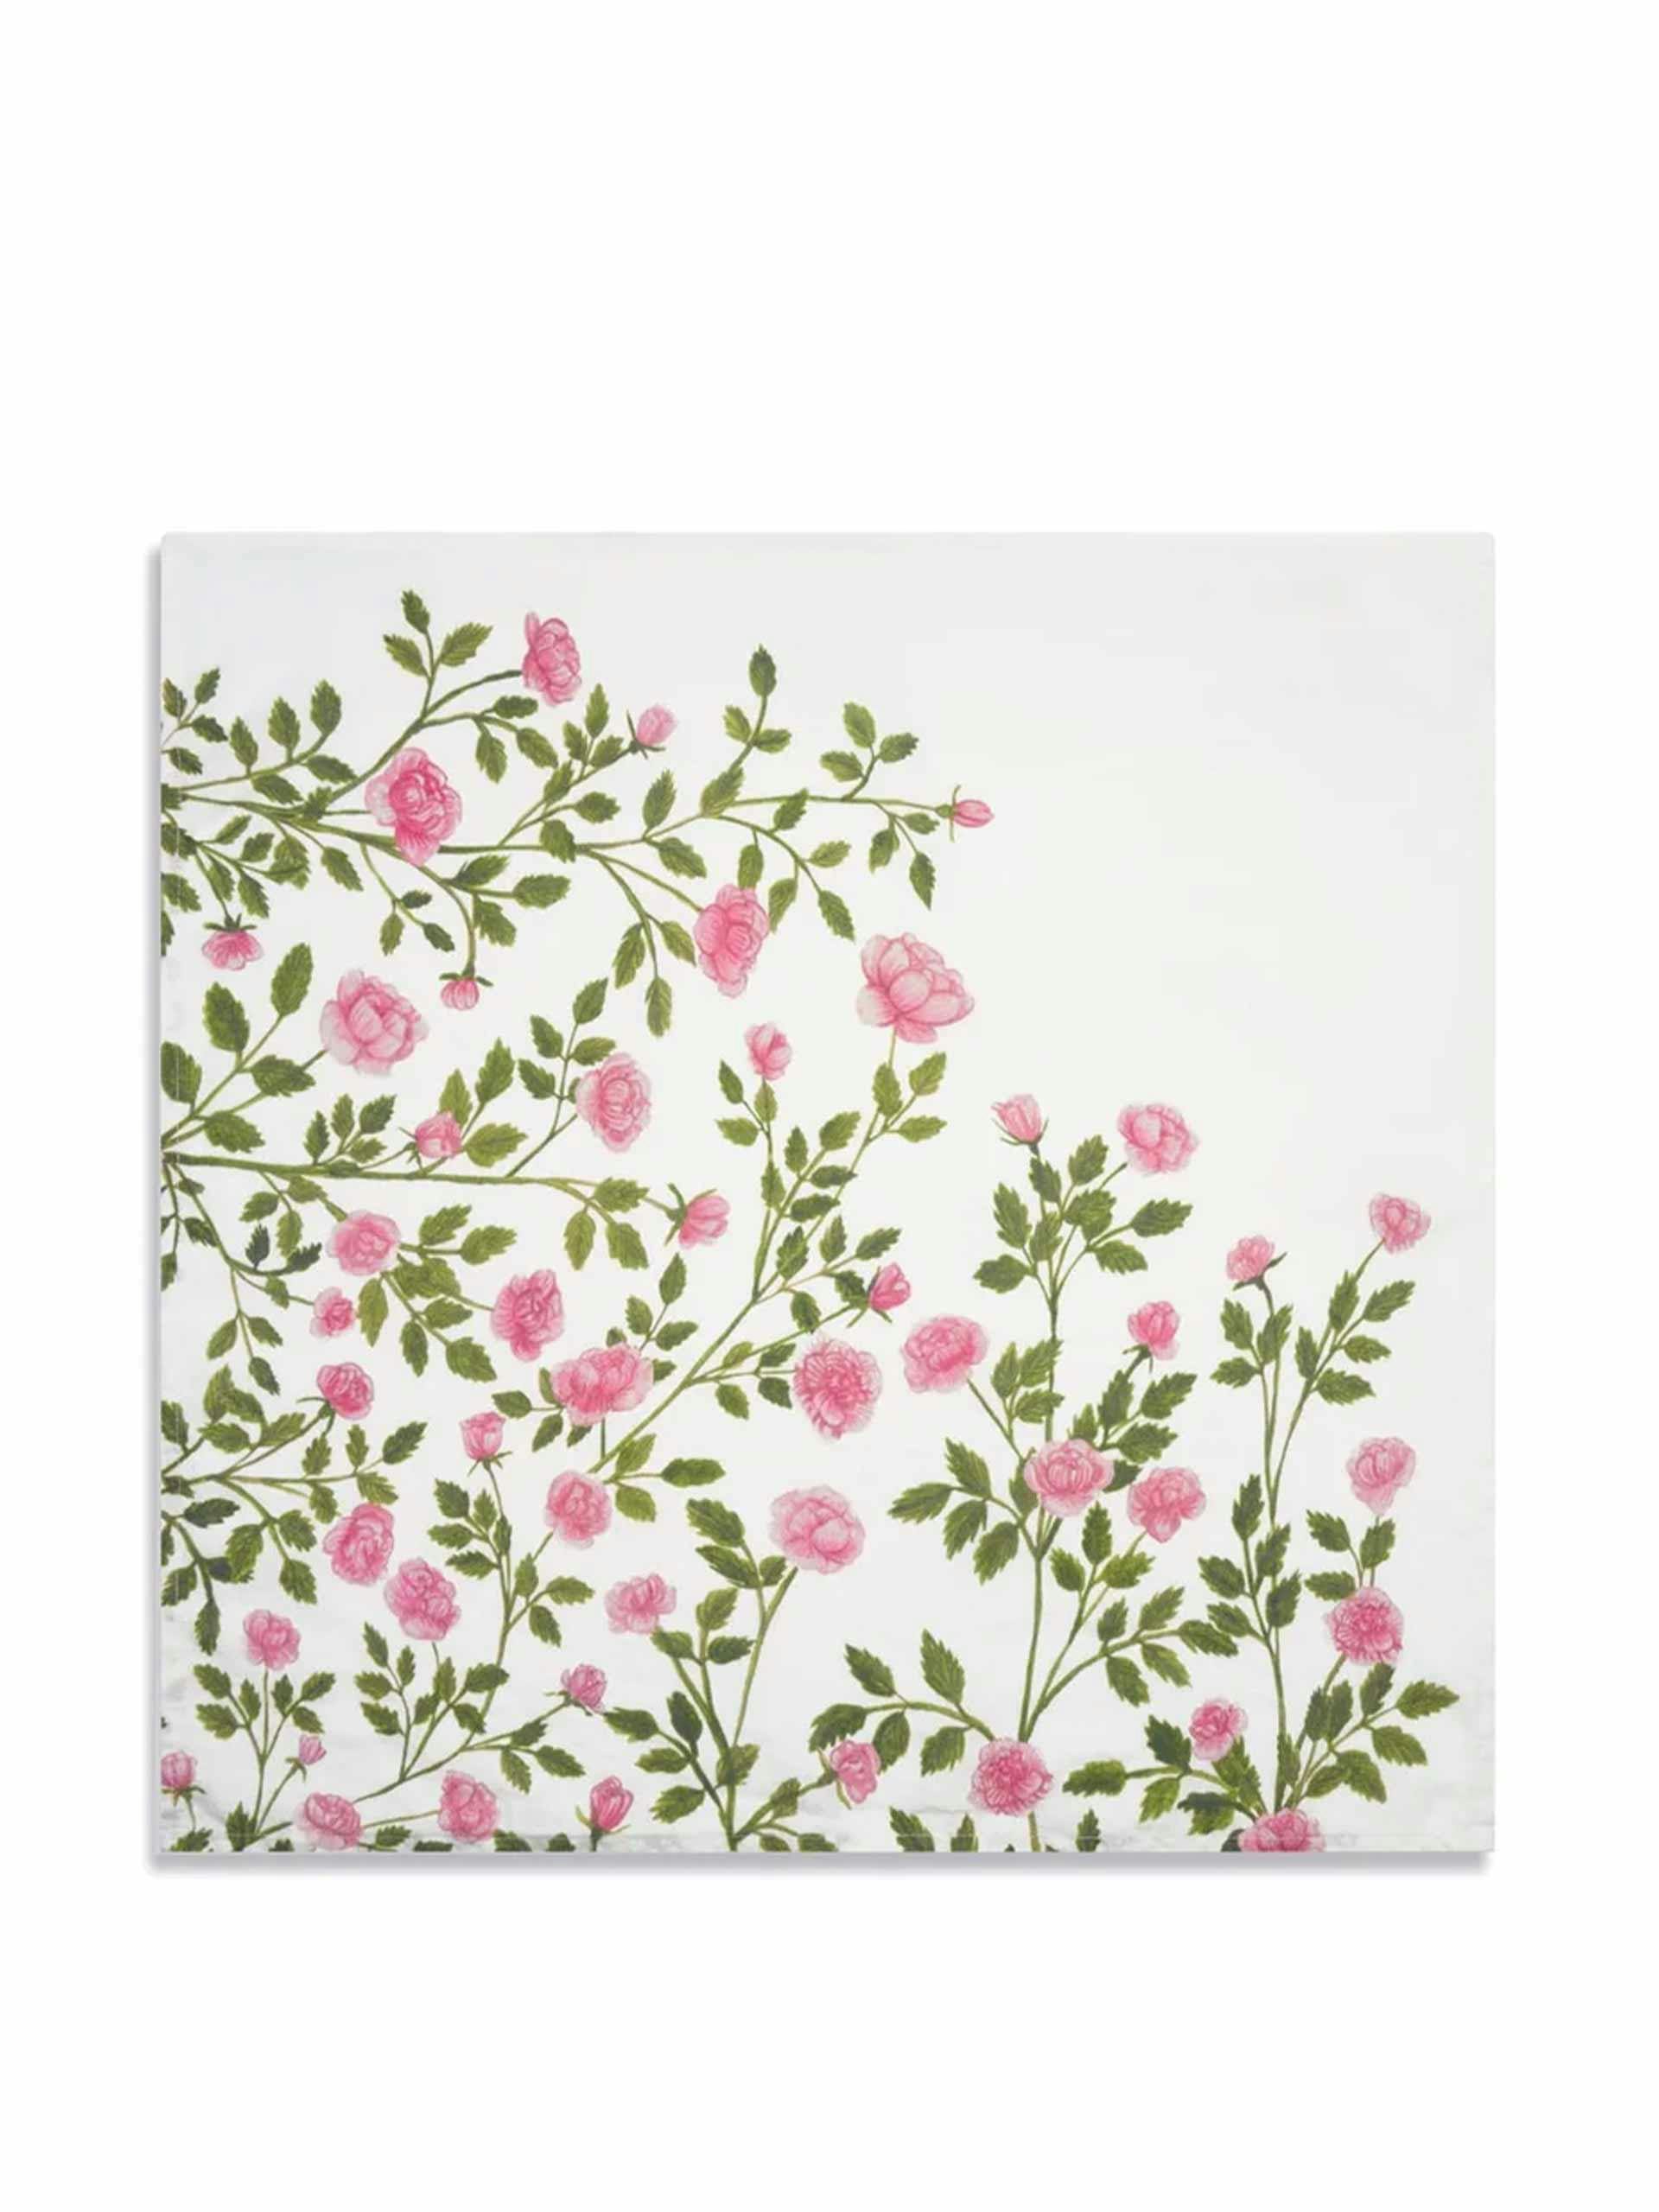 Le jardin des roses linen napkin in pink & green